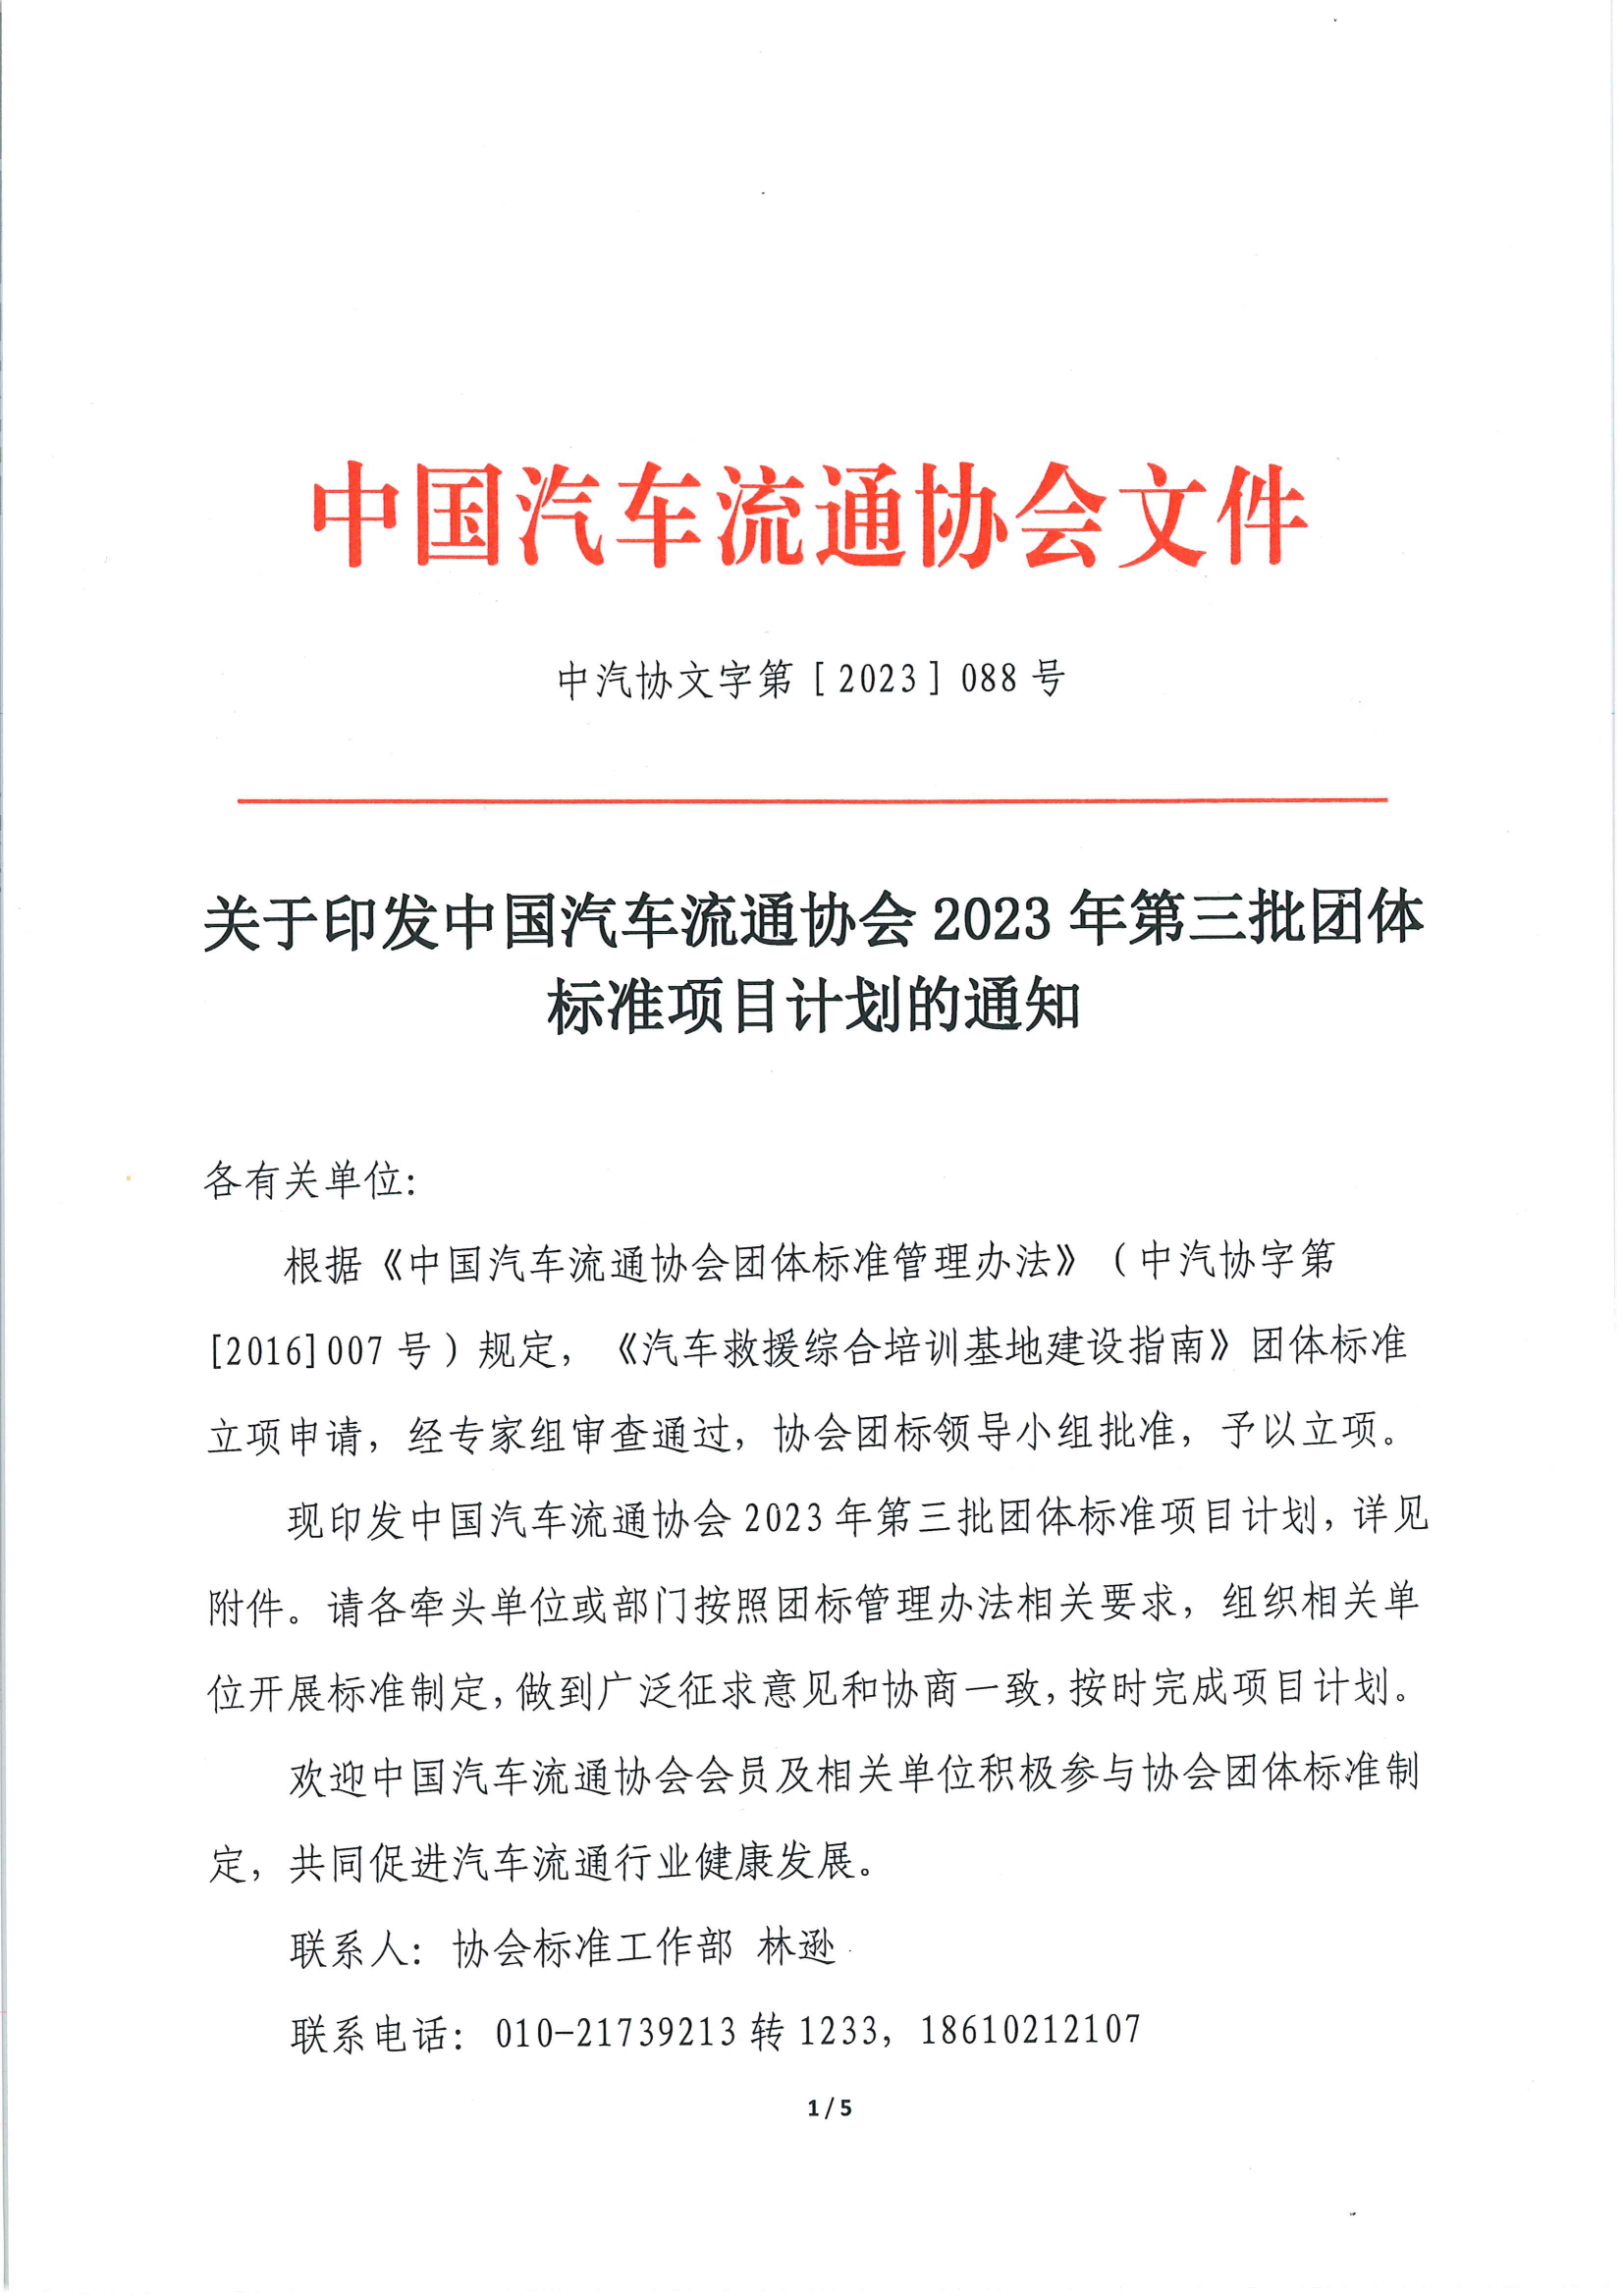 关于印发中国汽车流通协会 2023 年第三批团体标准项目计划的通知_00.png